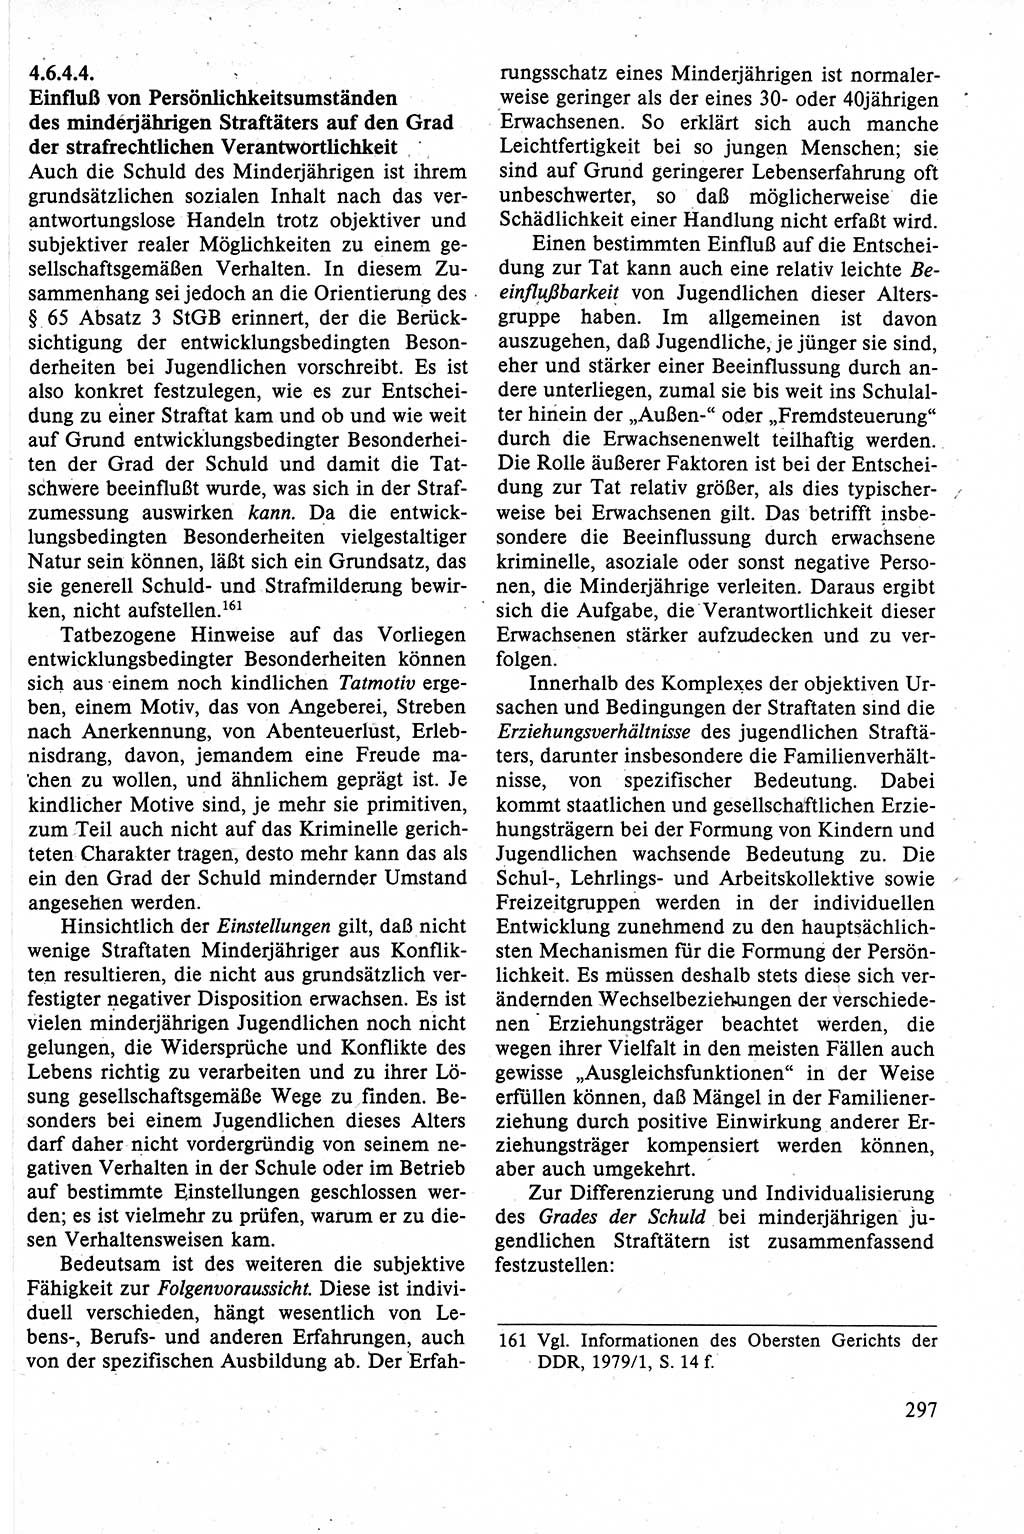 Strafrecht der DDR (Deutsche Demokratische Republik), Lehrbuch 1988, Seite 297 (Strafr. DDR Lb. 1988, S. 297)